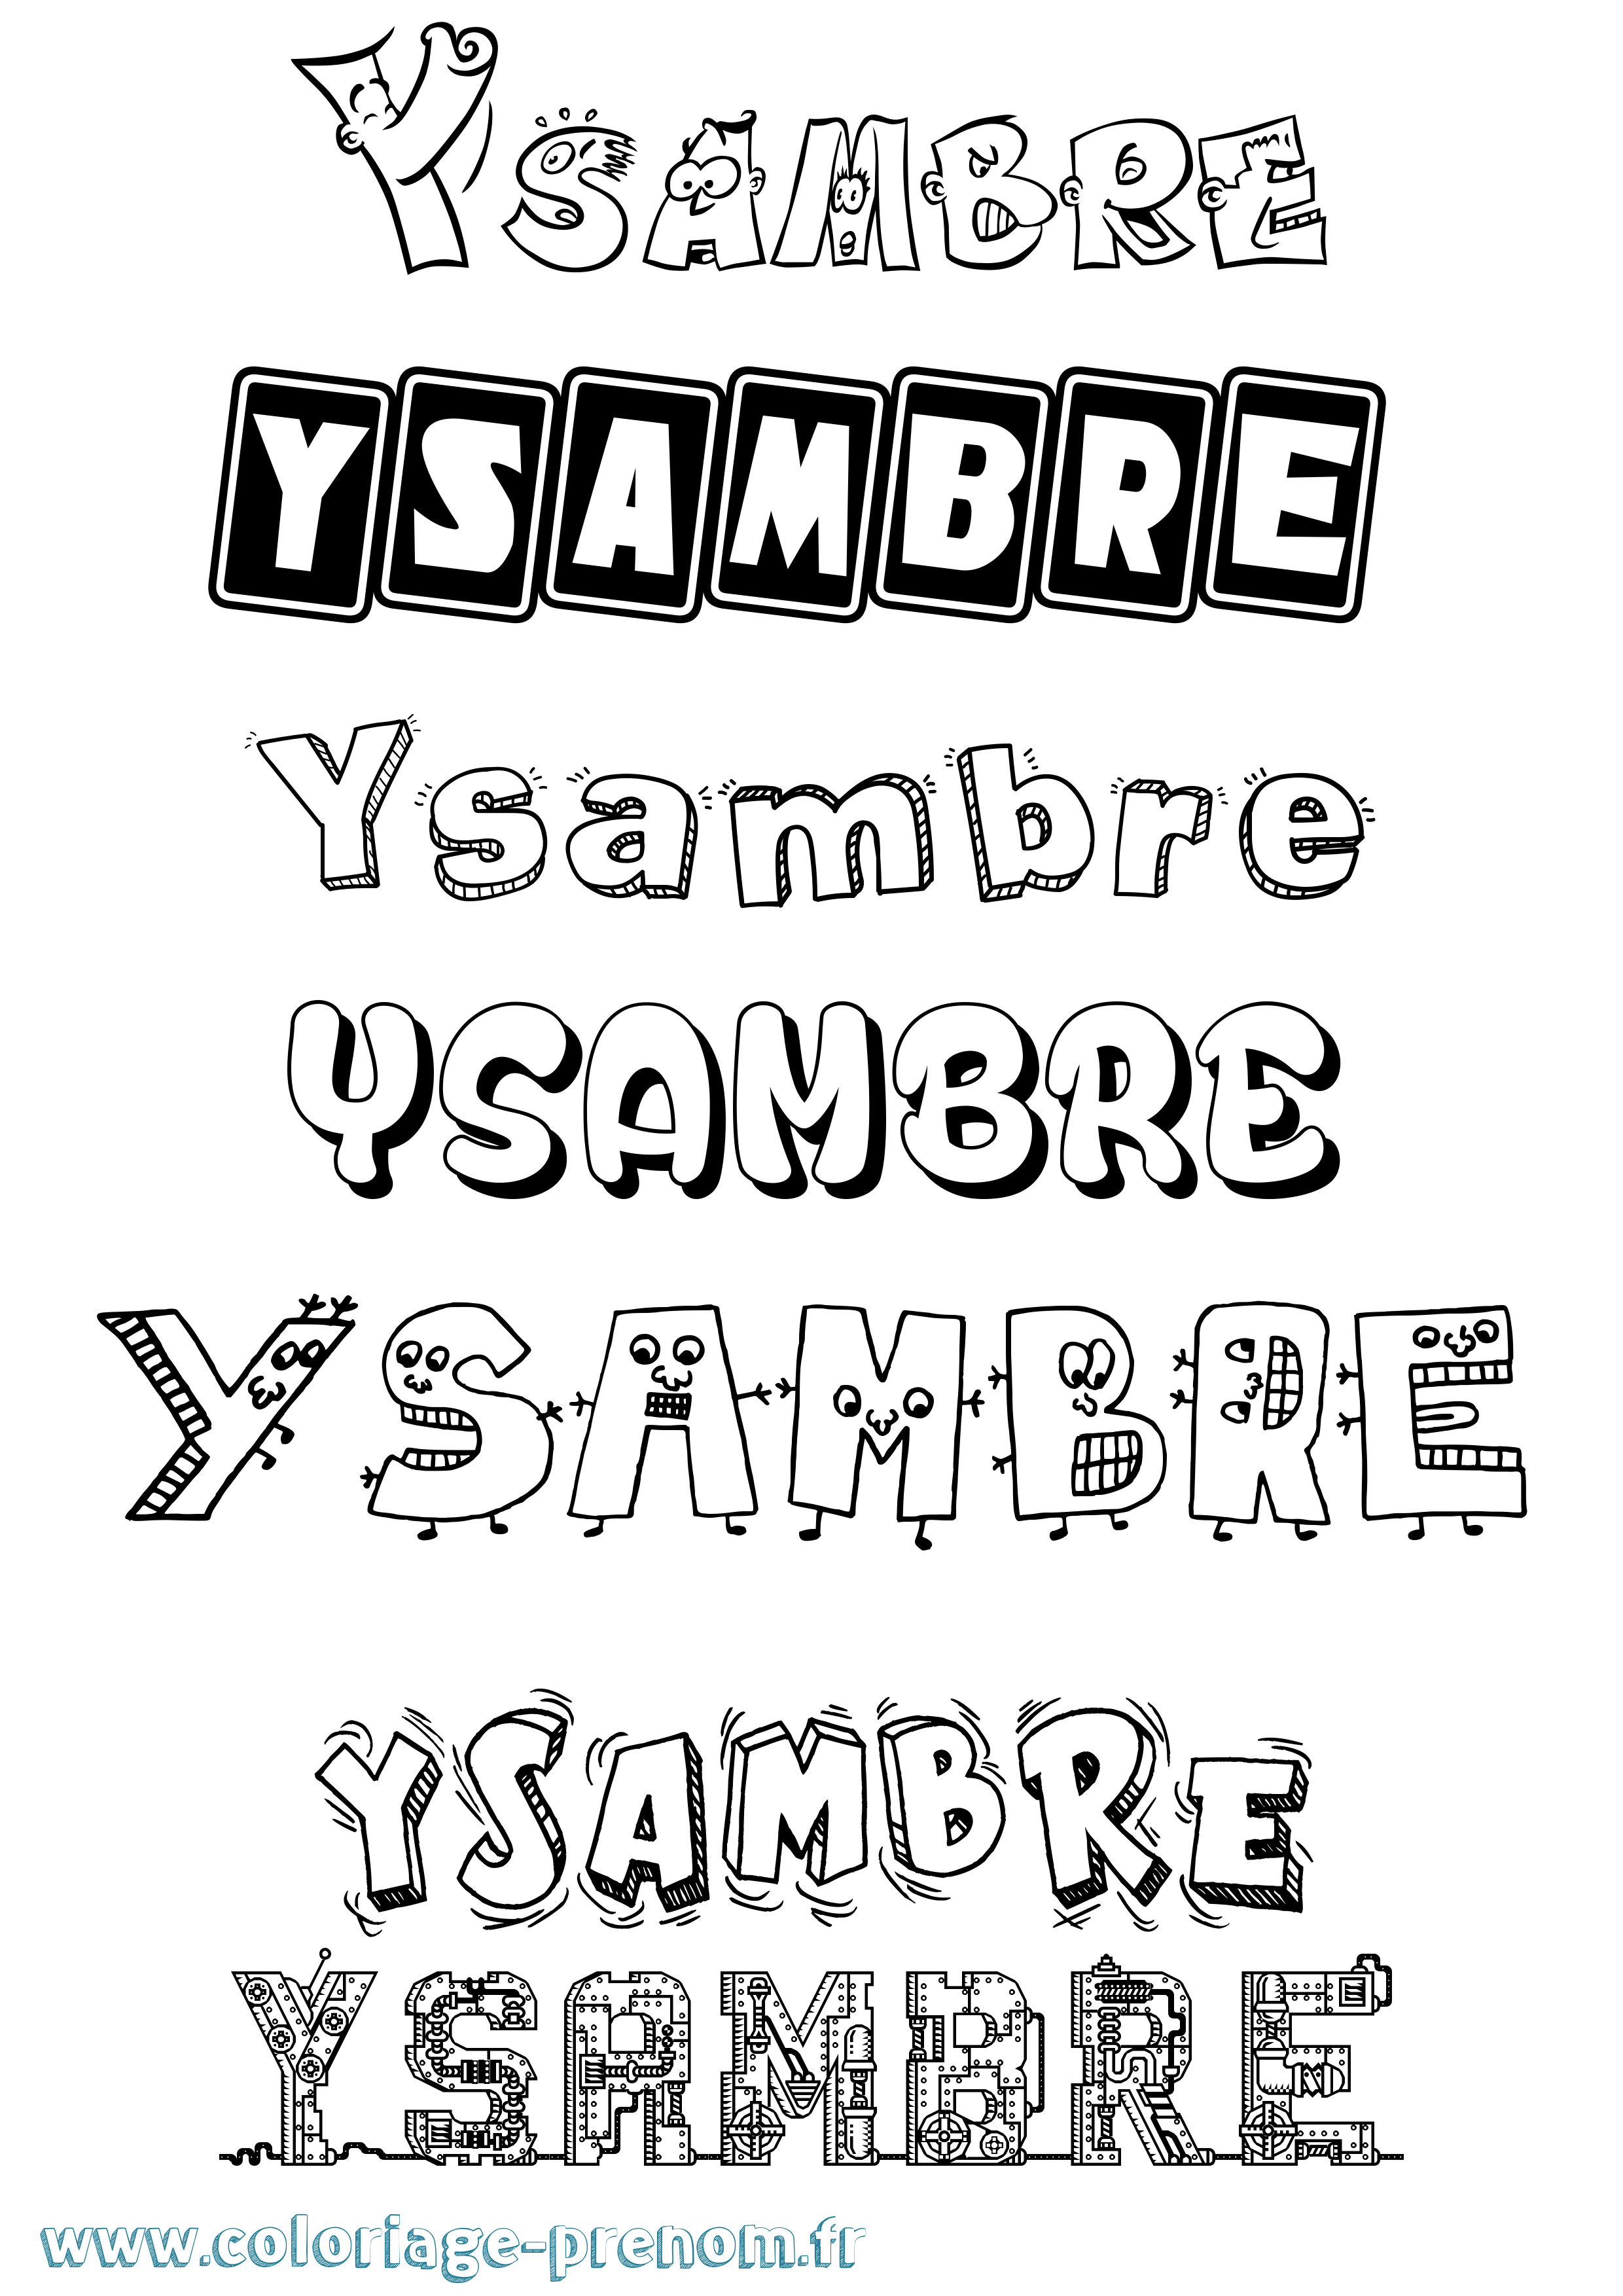 Coloriage prénom Ysambre Fun